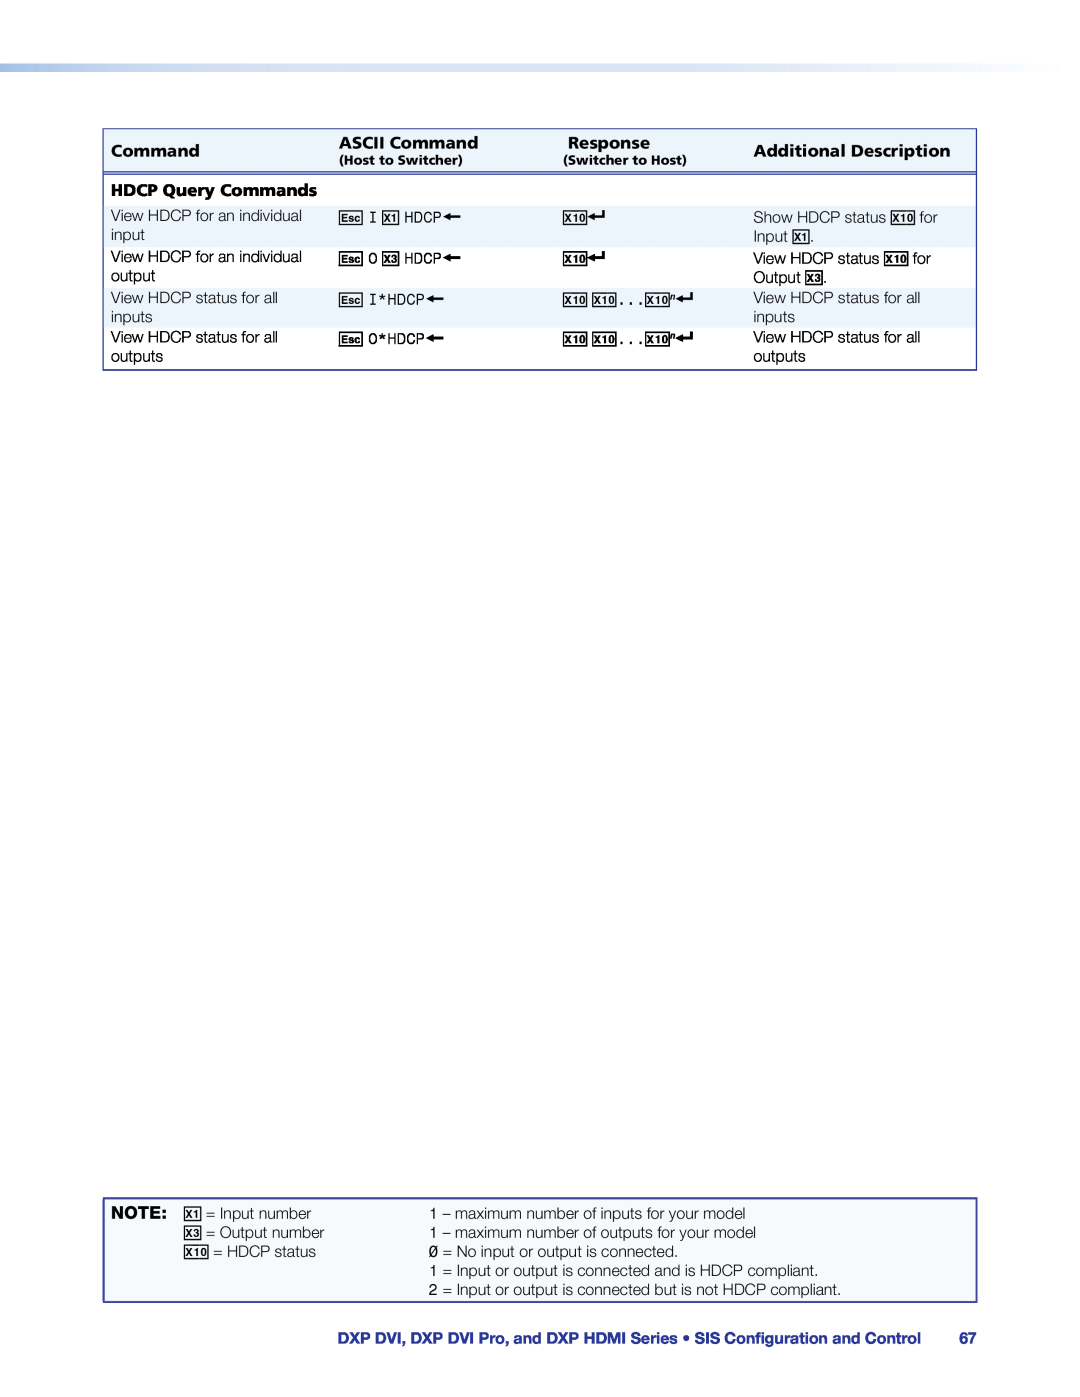 Extron electronic DXP DVI PRO manual ASCII Command, Response, Additional Description, HDCP Query Commands 